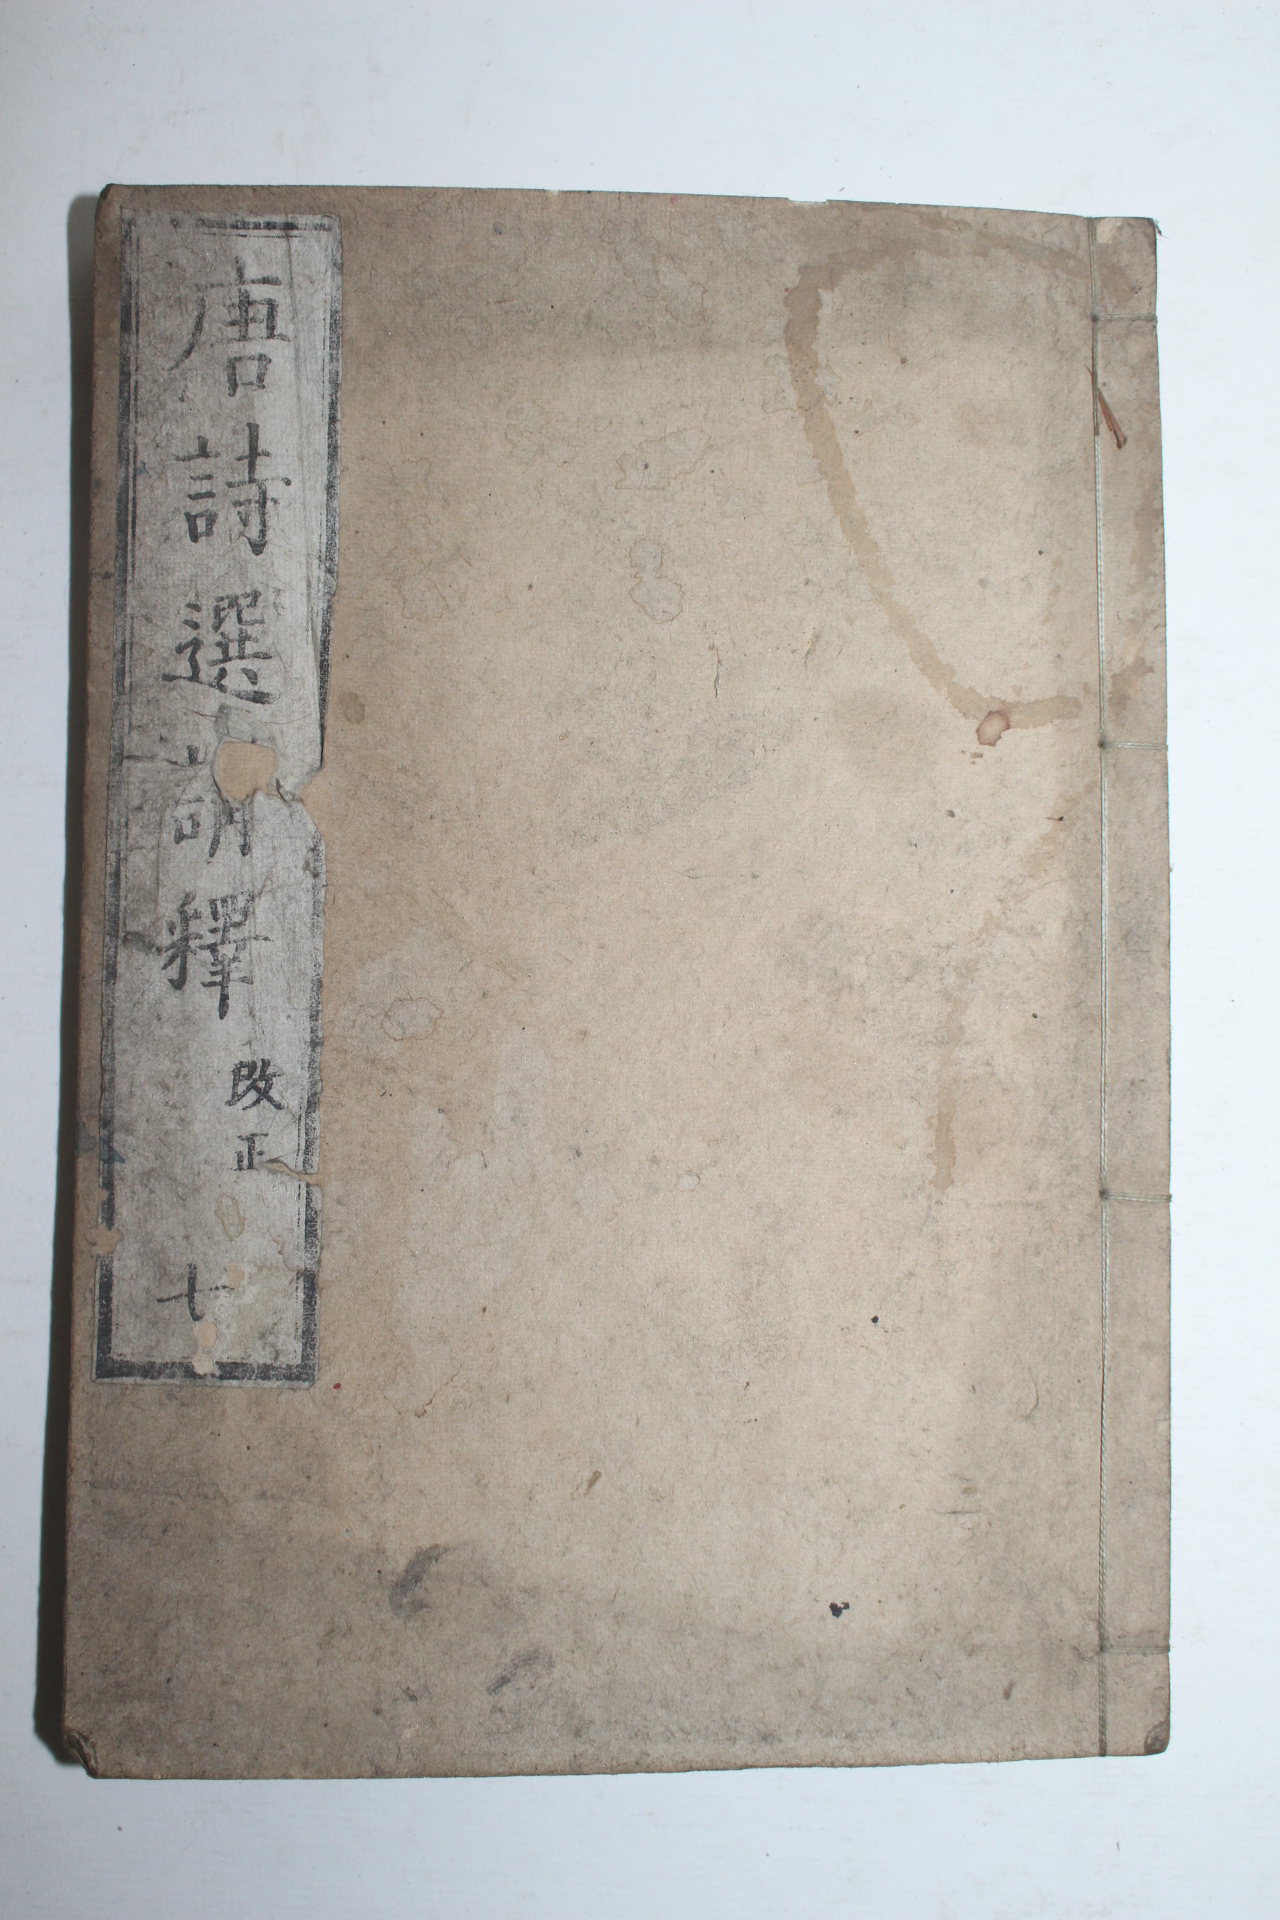 1813년(文化10年) 일본목판본 당시선사전강석(唐詩選師傳講釋) 7책완질